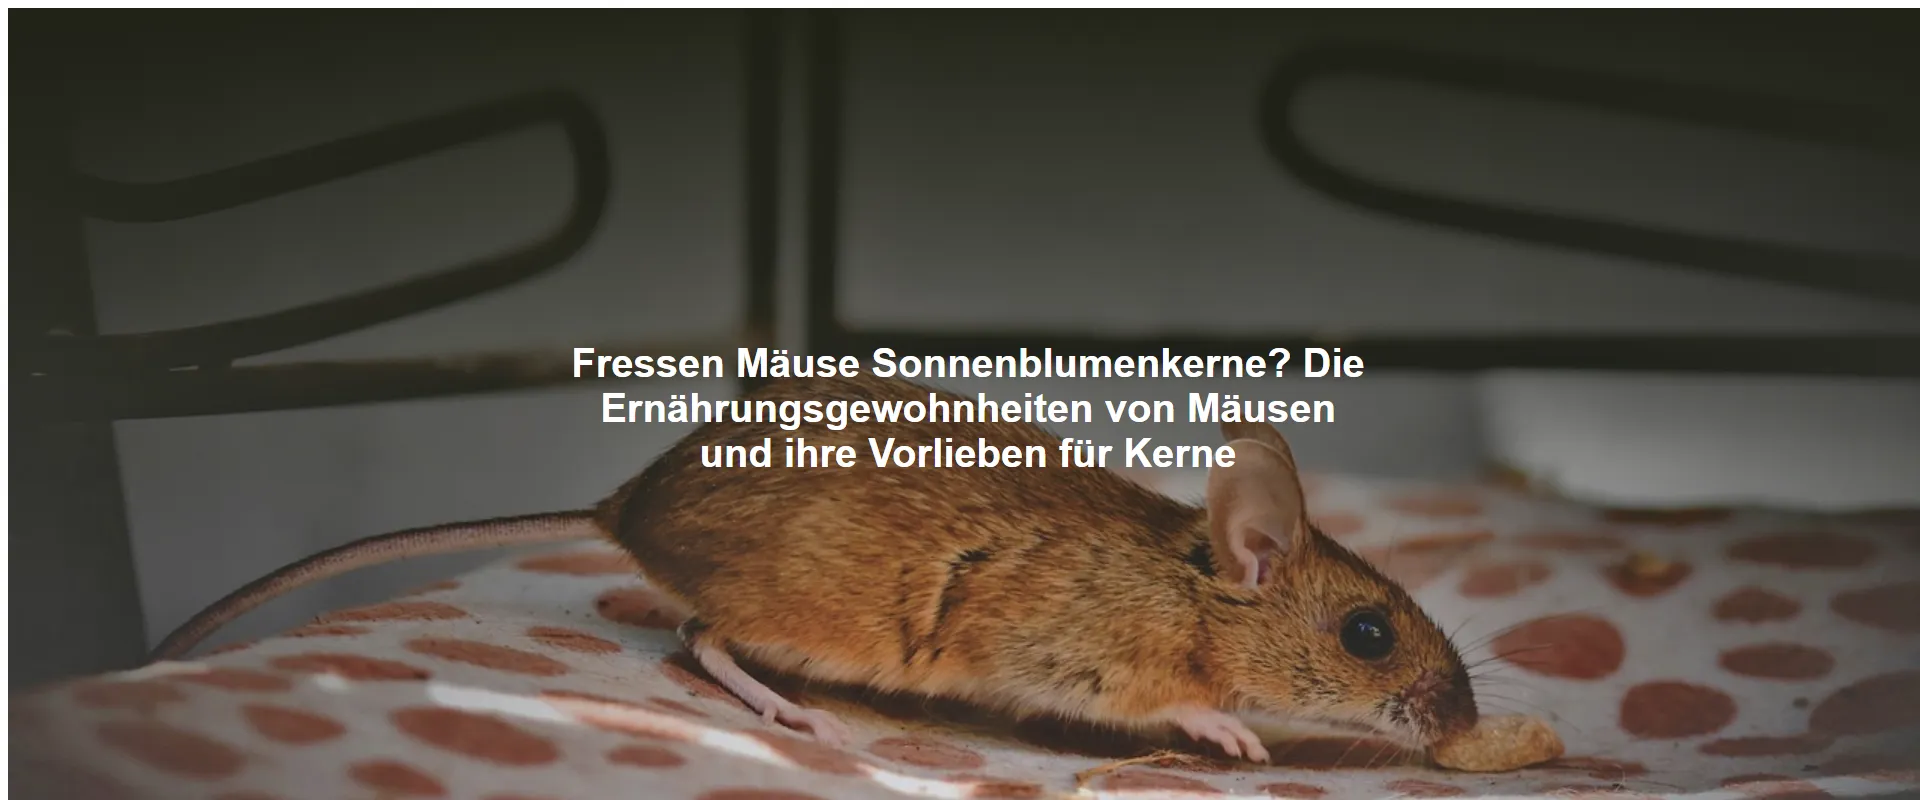 Fressen Mäuse Sonnenblumenkerne? Die Ernährungsgewohnheiten von Mäusen und ihre Vorlieben für Kerne